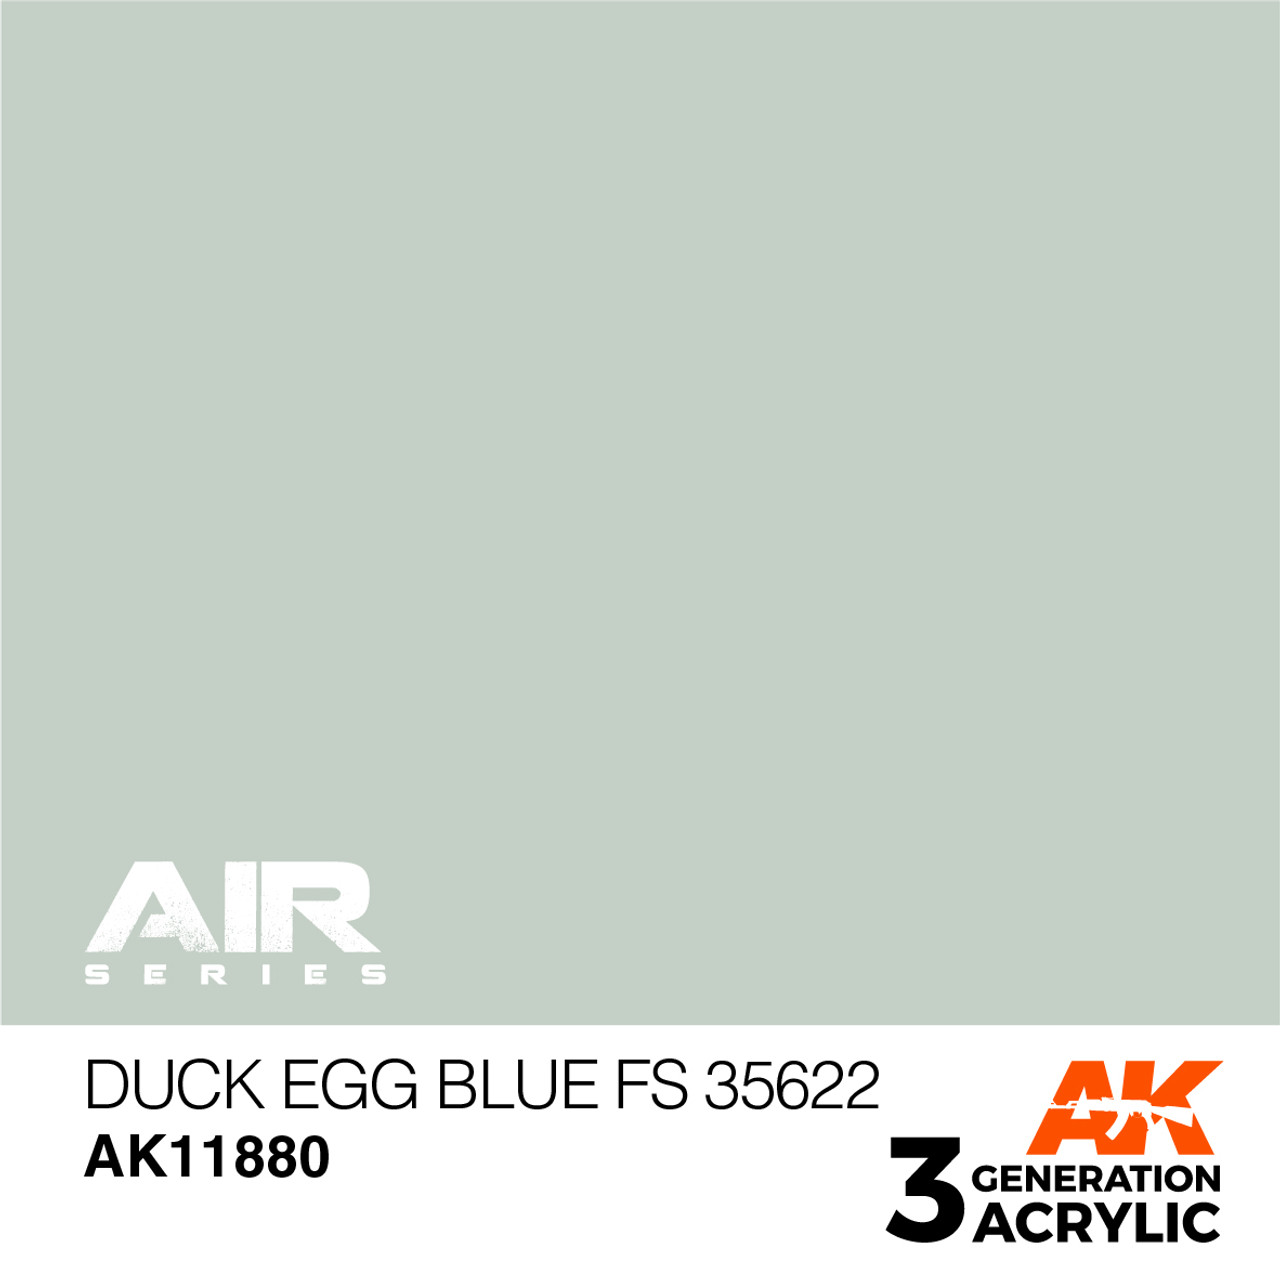 3G Air 080 - Duck Egg Blue FS 35622 - AK11880